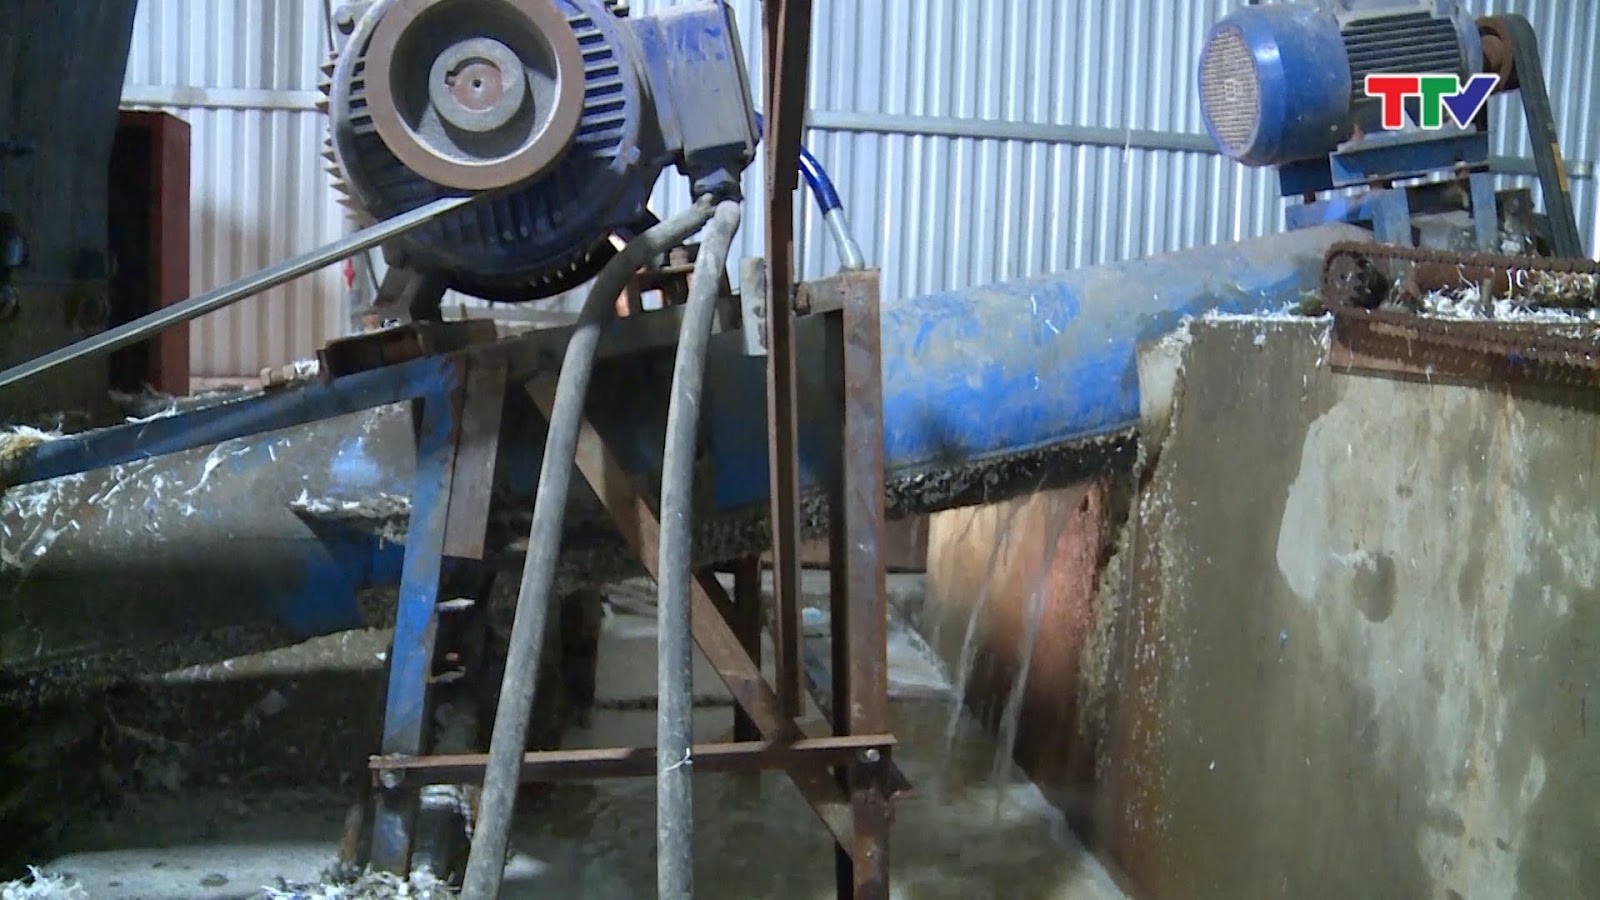  tình trạng sản xuất, tái chế nhựa trái phép trong khu dân cư tại thôn Trung Phong, xã Quảng Phong, huyện Quảng Xương